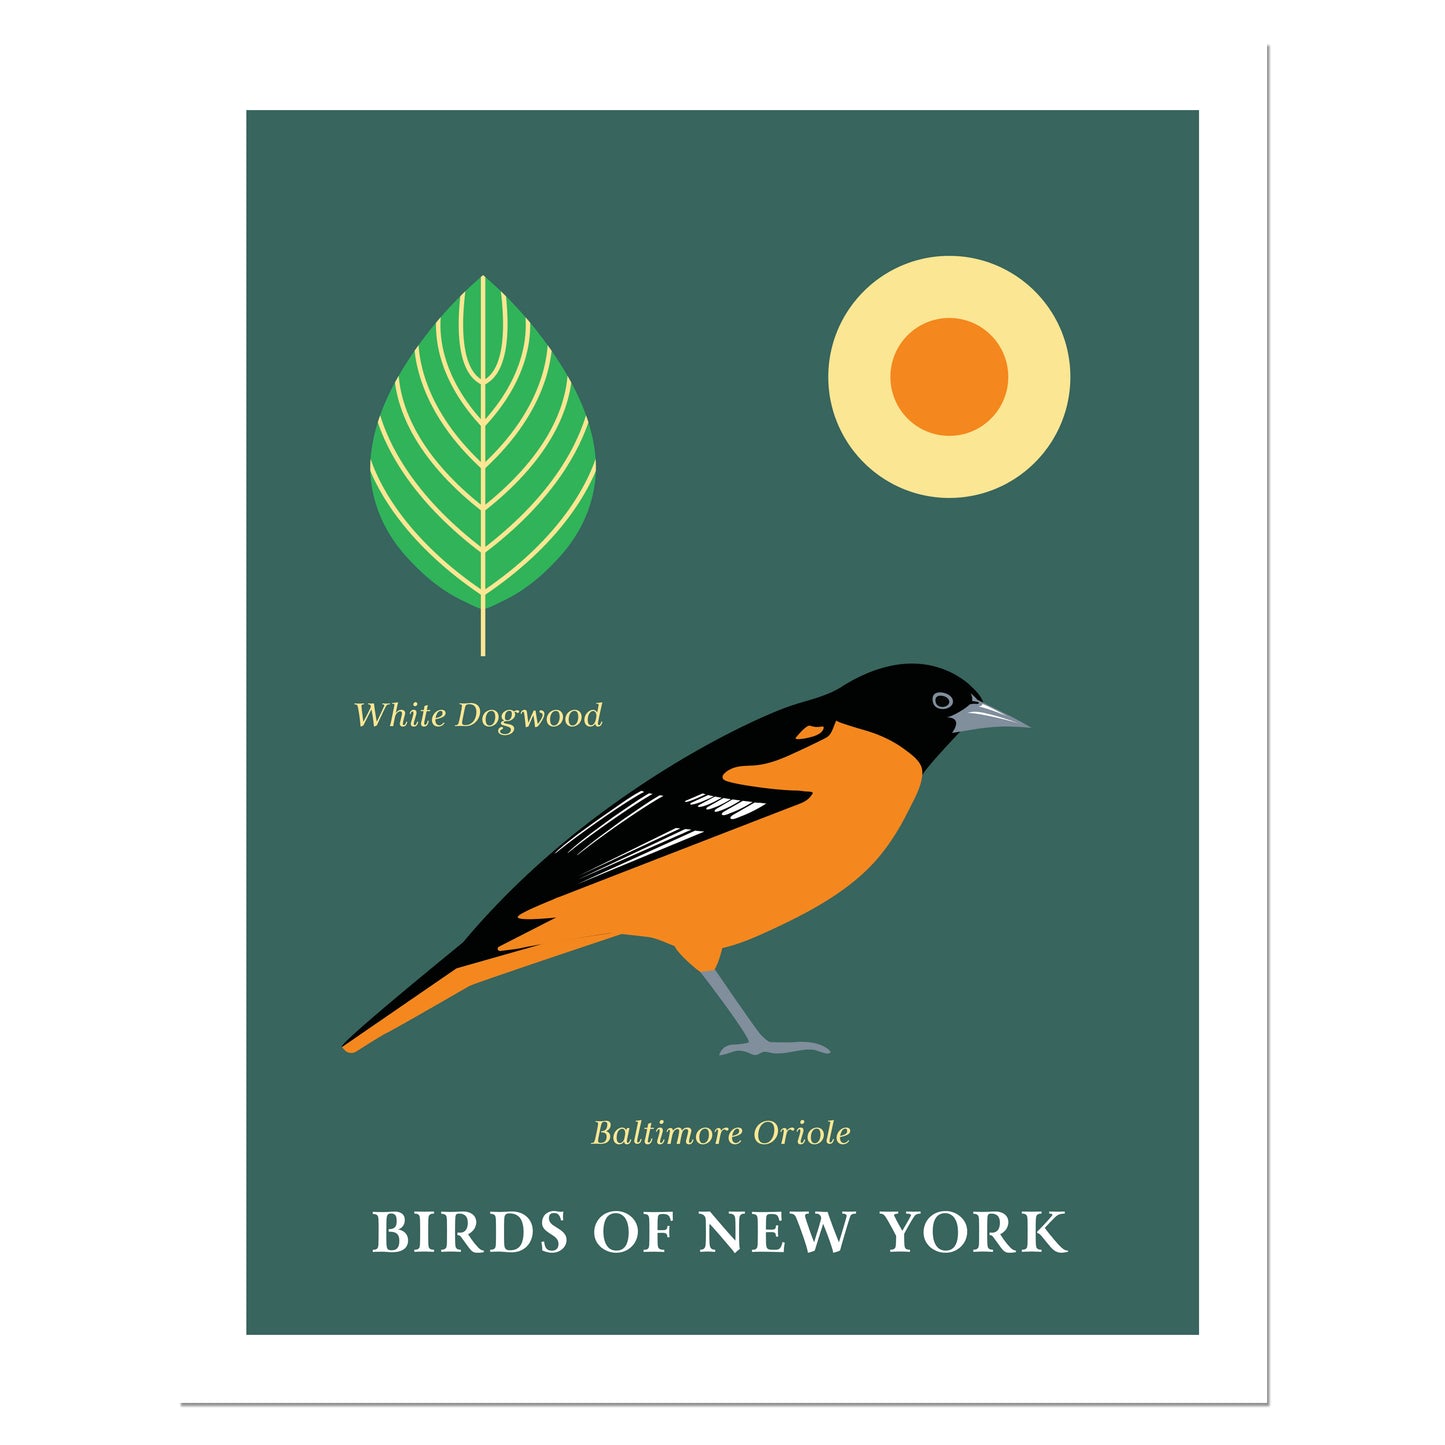 Baltimore Oriole - Birds of New York